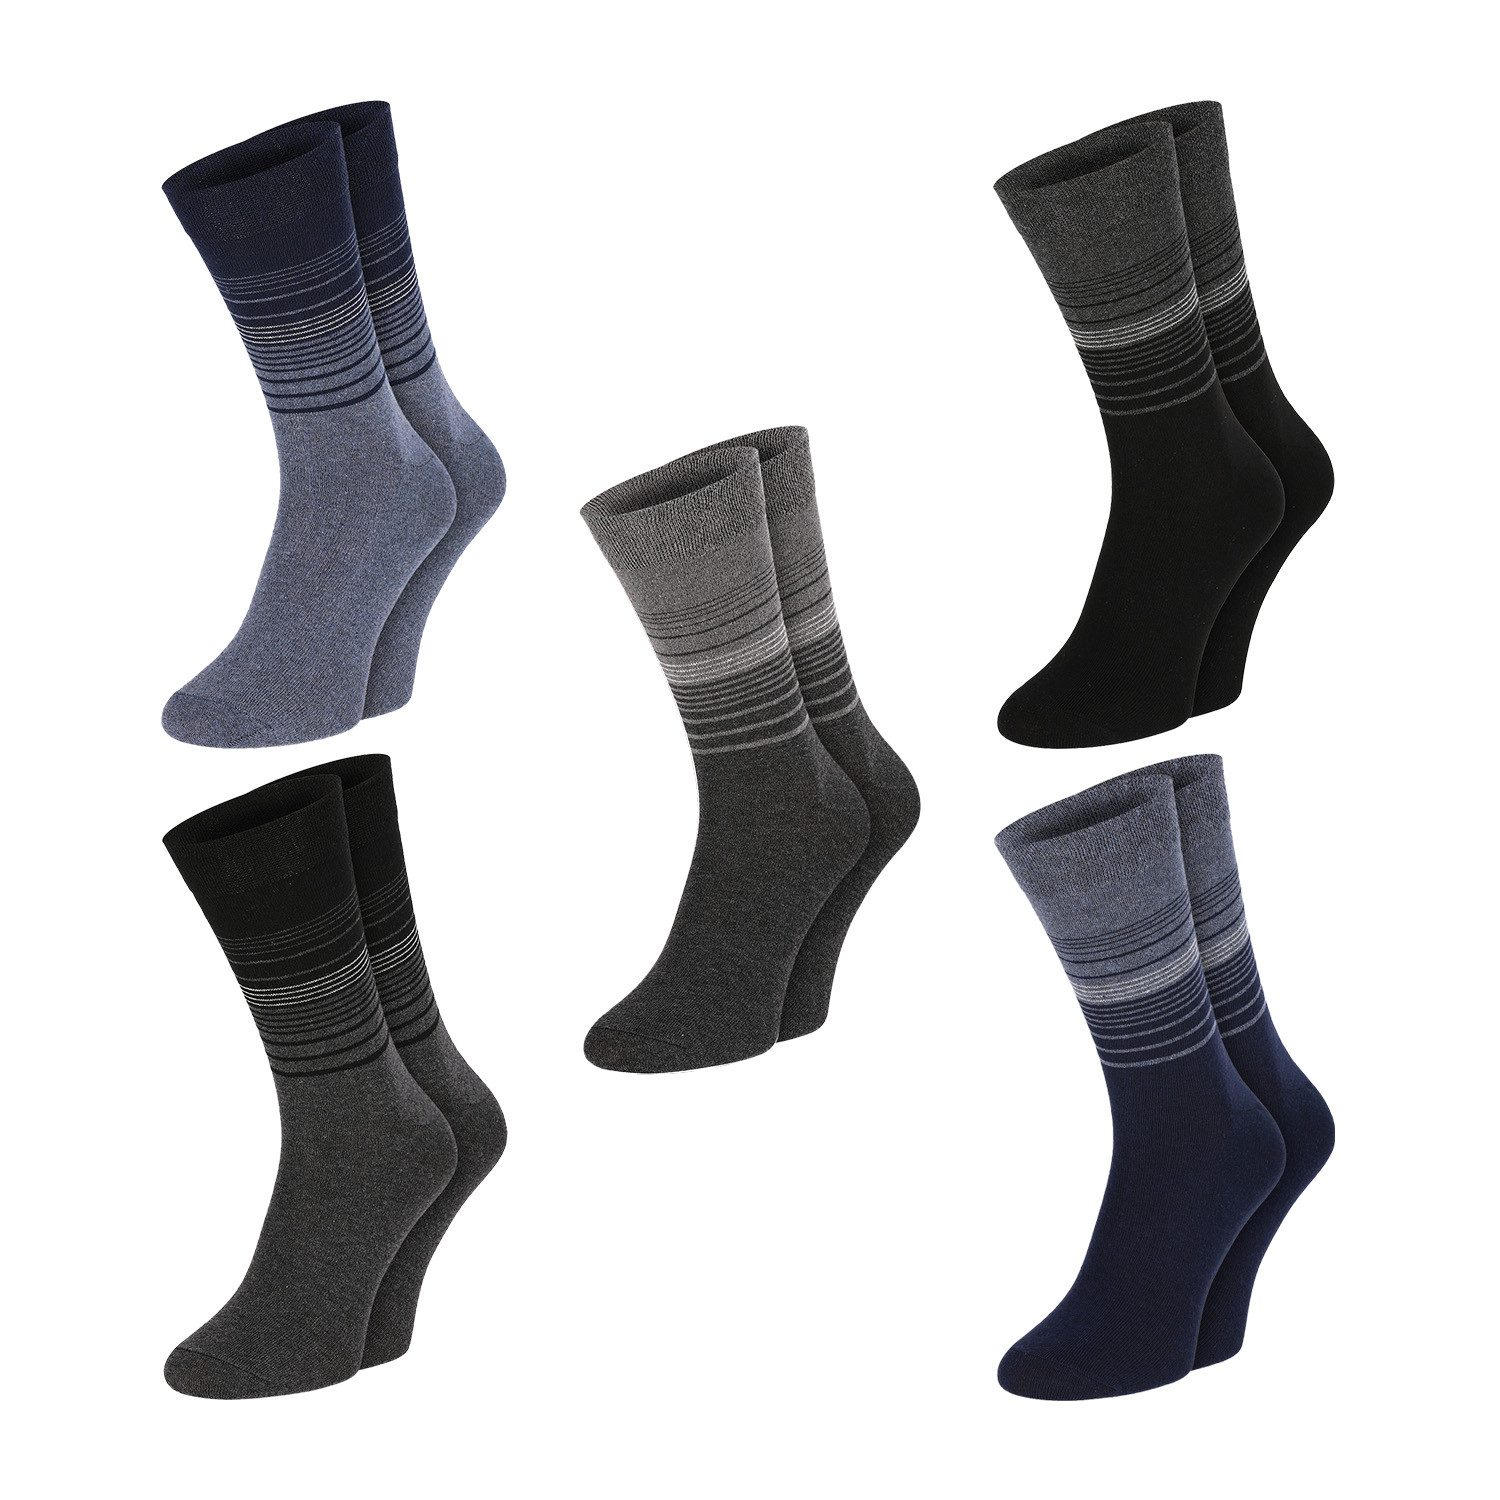 Chili Lifestyle Strümpfe Socken Streifen Design, 5 Paar, Damen, Herren, Schwarz, Grau